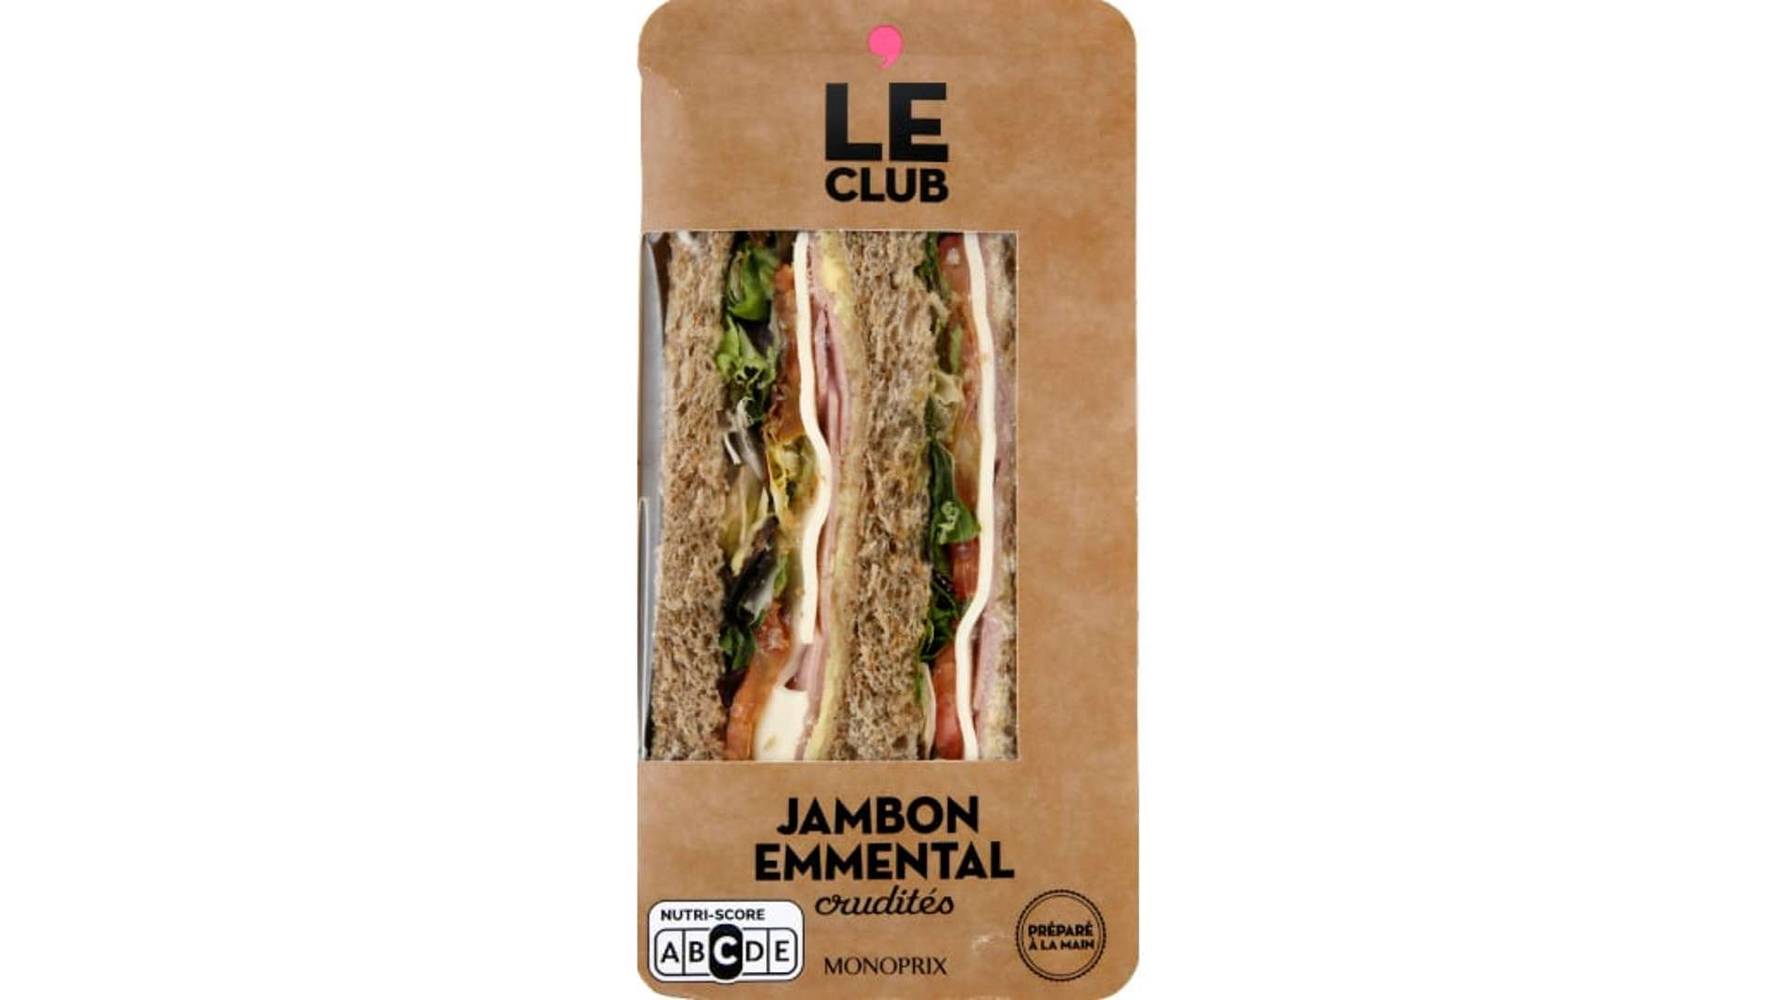 Monoprix Le club, jambon, emmental et crudites L'unite de 180g